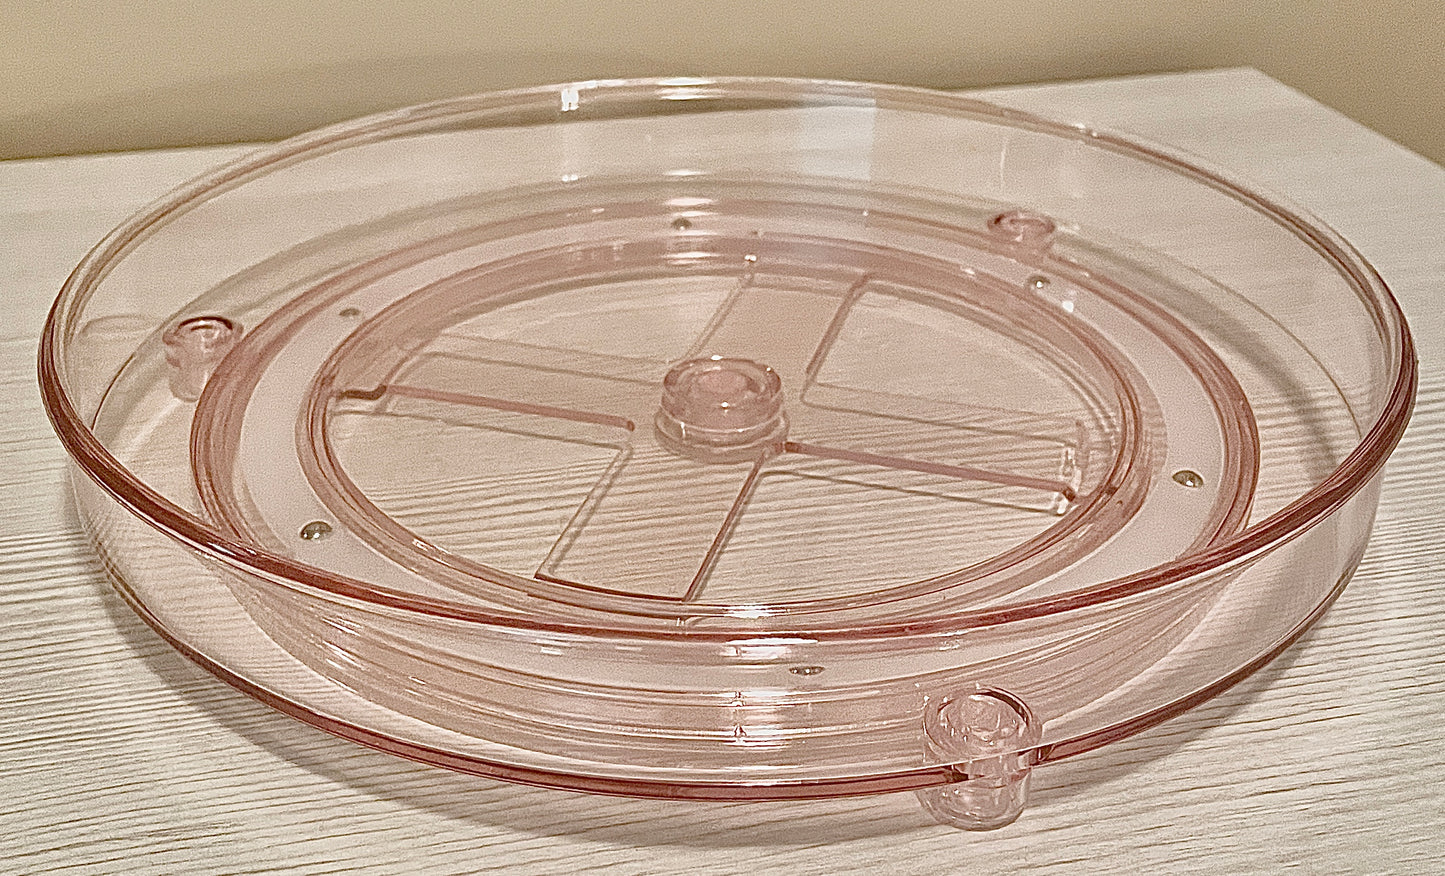 Lightpink plastic spinning tray